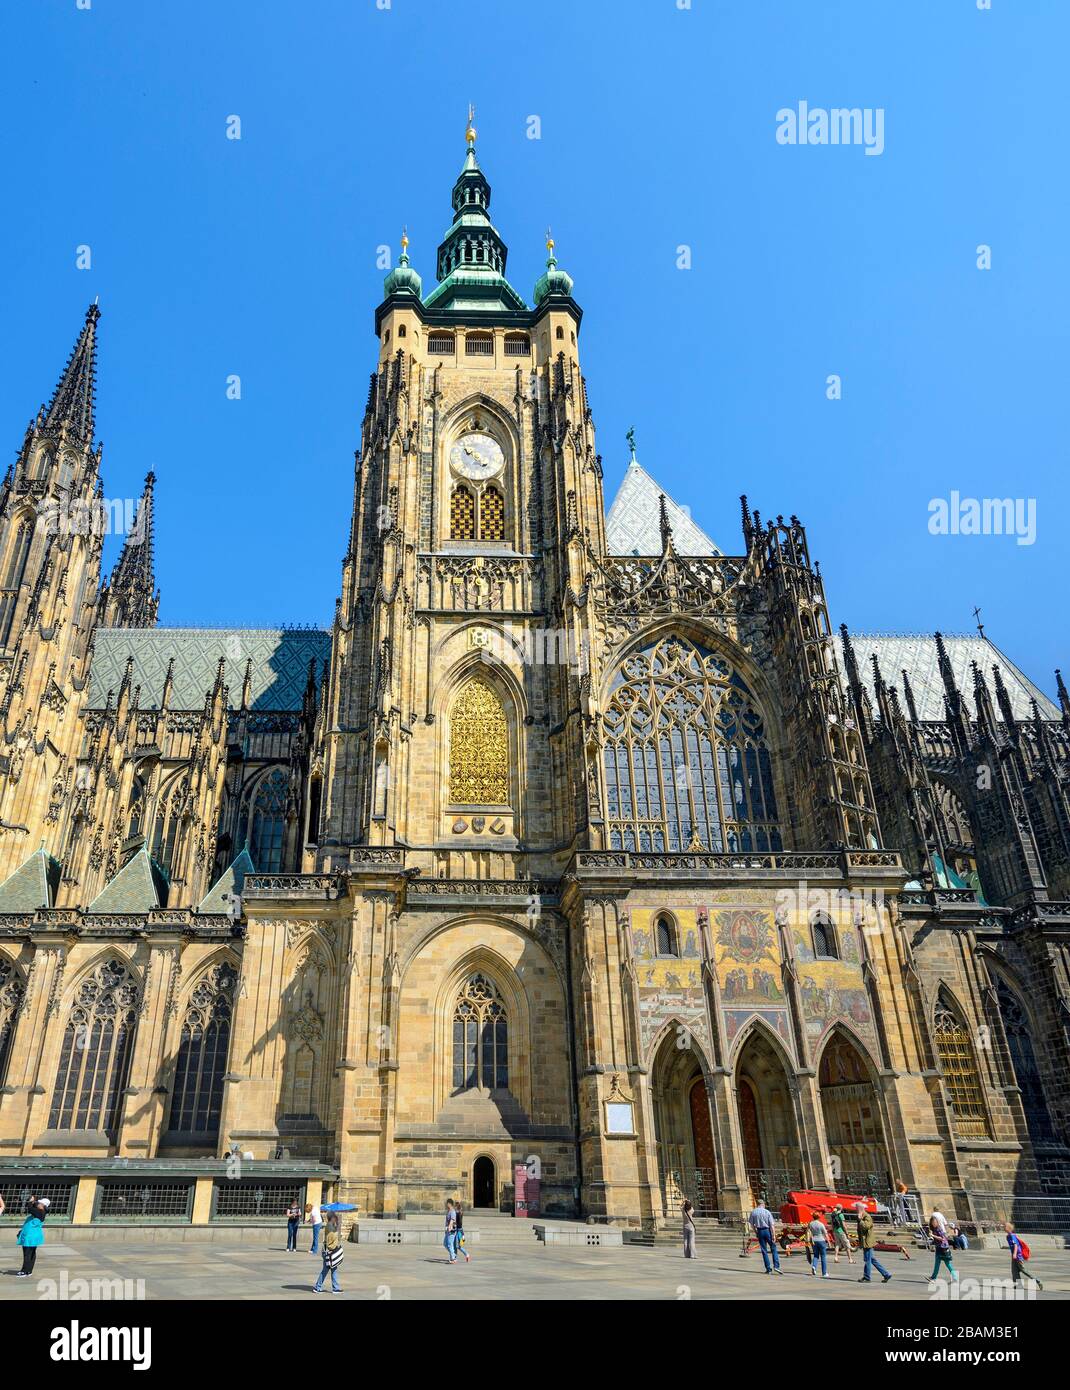 südfront der Metropolitankathedrale der Heiligen Vitus, Wenceslaus und Adalbert auf dem Burgberg Hradschin bei Prag, Tschechien Stockfoto